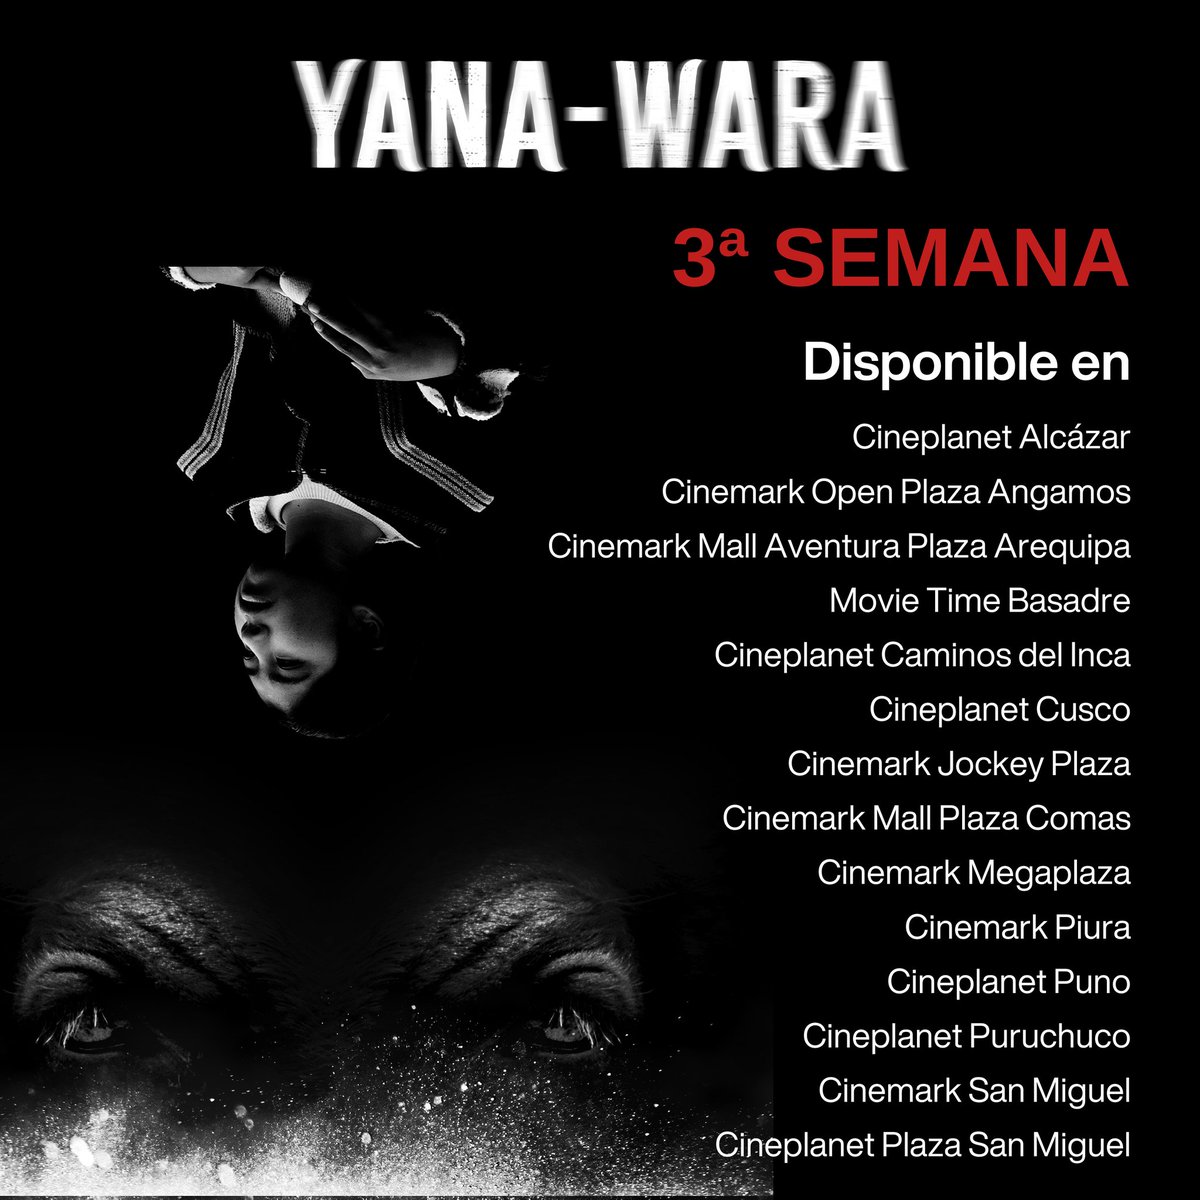 ¡Tercera Semana en Cartelera‼️ Bienvenidos al Universo de la Cosmovisión Andina. Yana-Wara, ¡Ahora en Cines! Entradas Aquí ⤵️ linktr.ee/vrfilmsgroup 𝚅𝚁 𝙵𝙸𝙻𝙼𝚂 𝙶𝚁𝙾𝚄𝙿 𝚂𝙰𝙲 - 𝟸𝟶𝟼𝟶𝟼𝟶𝟻𝟺𝟶𝟻𝟷